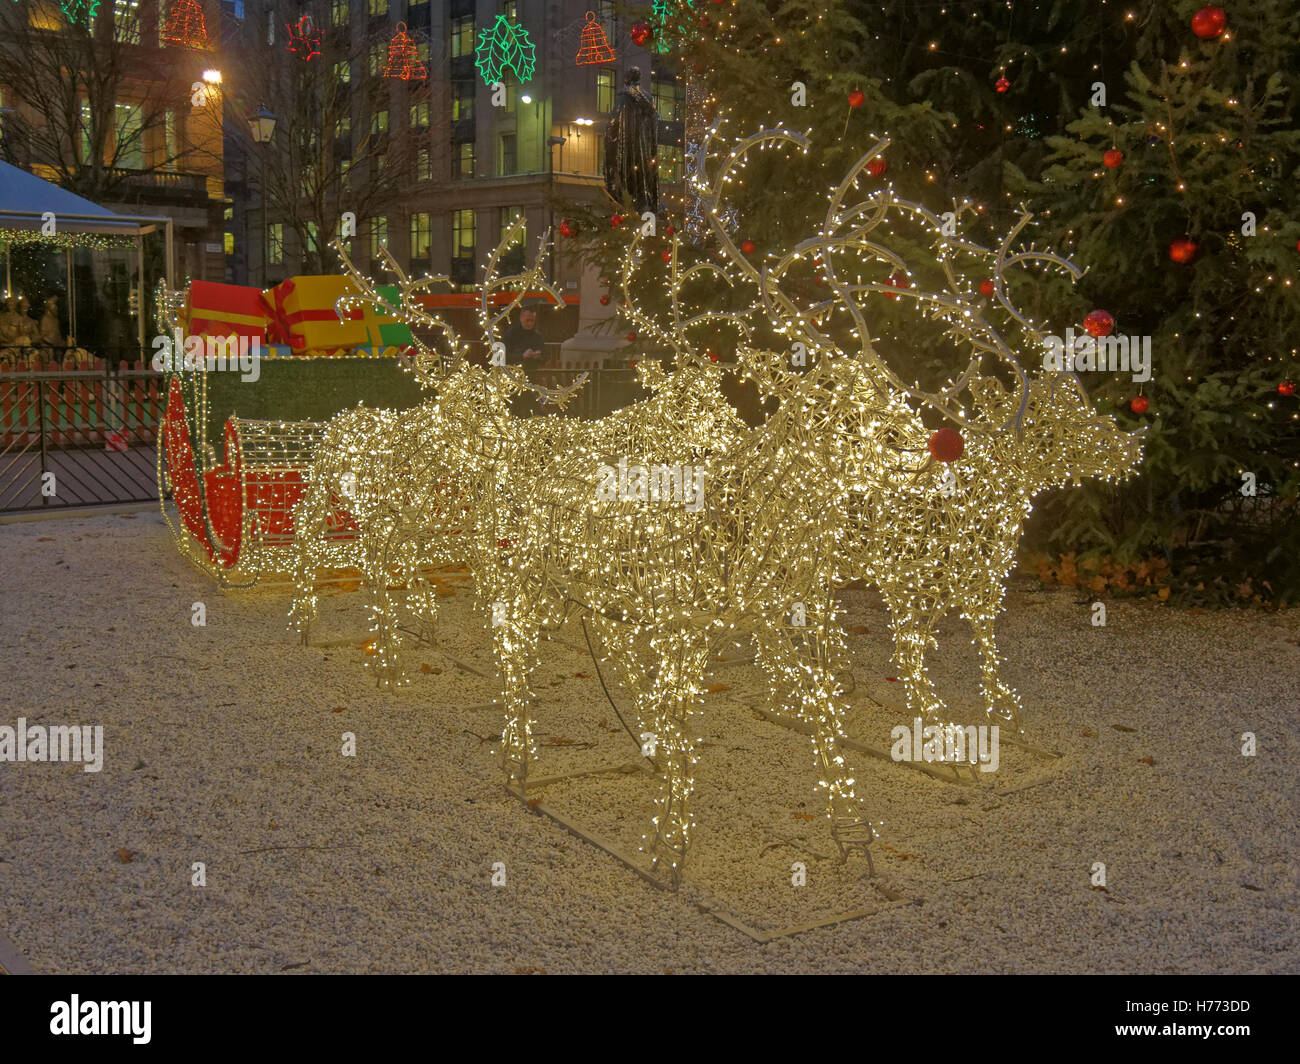 Glasgow ama la celebrazione di Natale george square renne luci e decorazioni con slitta glasgow mercatino di natale Foto Stock